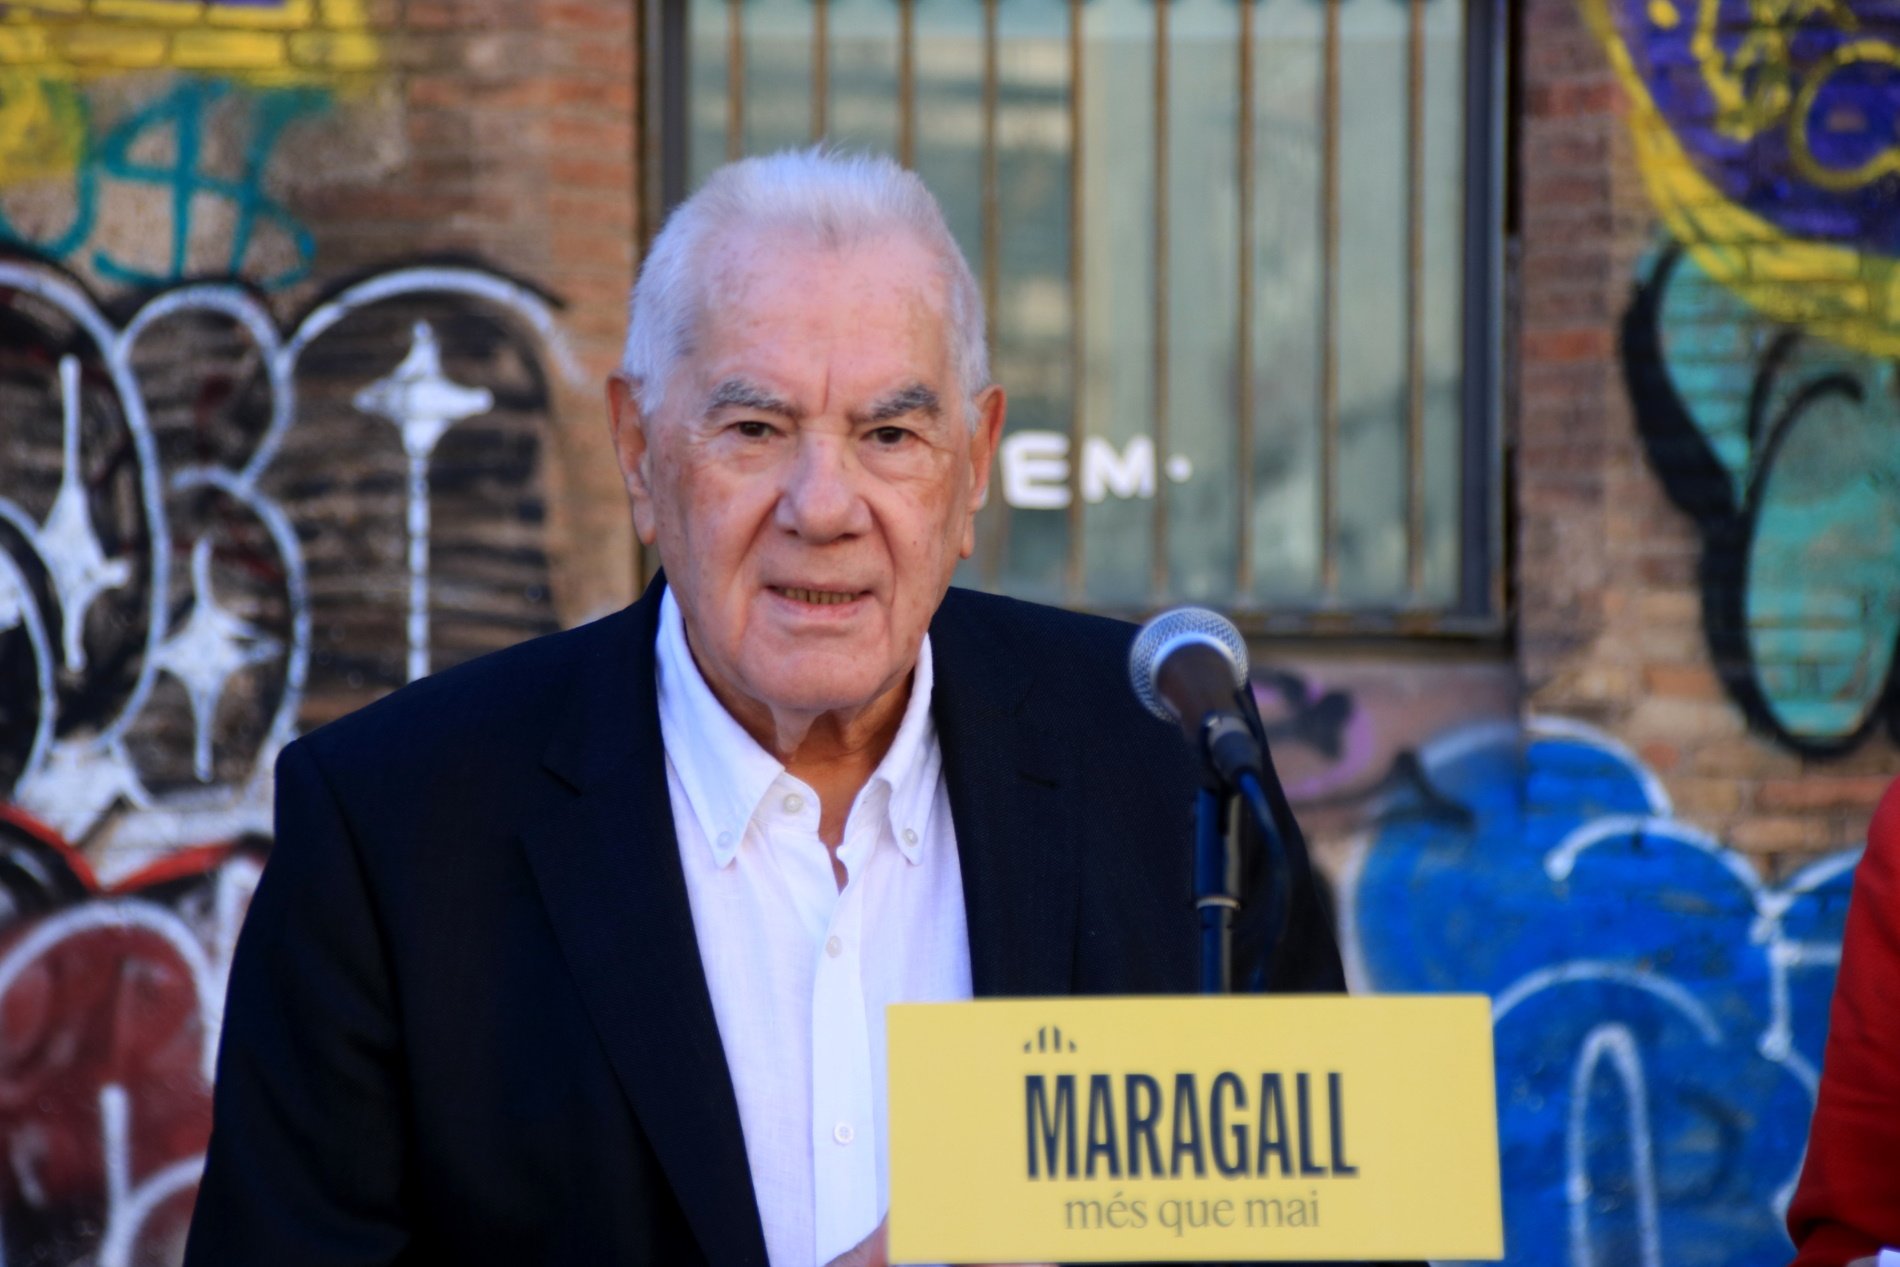 Maragall promet un equip de 100 treballadors per netejar els punts més degradats de Barcelona en 100 dies